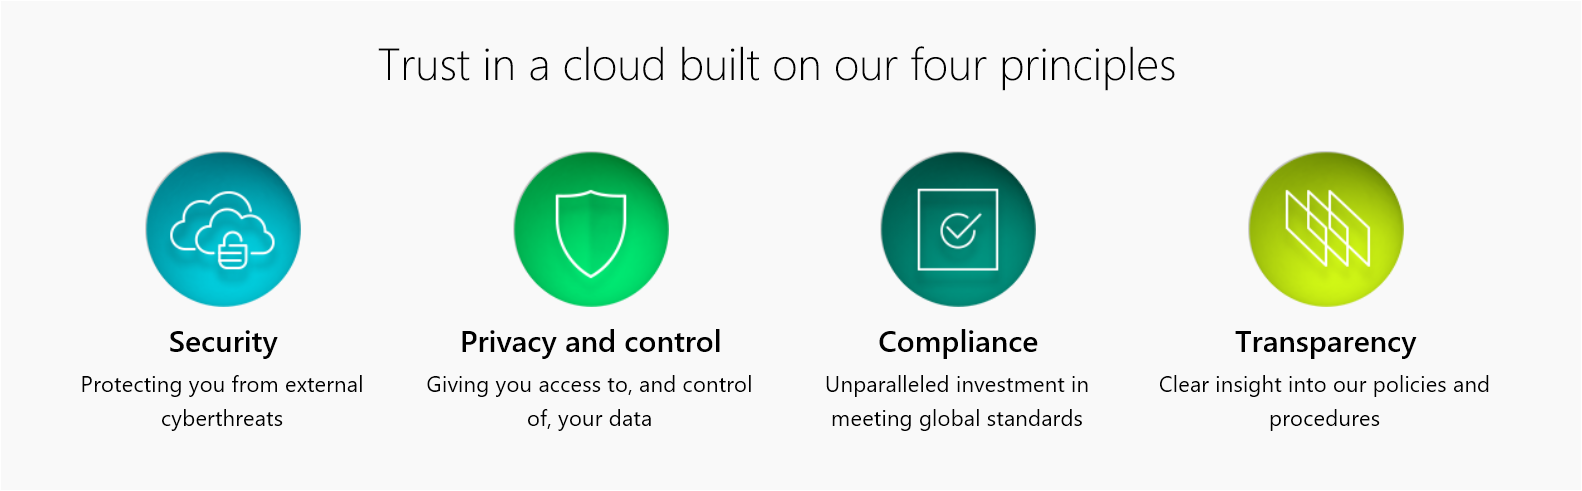 Microsoft Cloud Principles